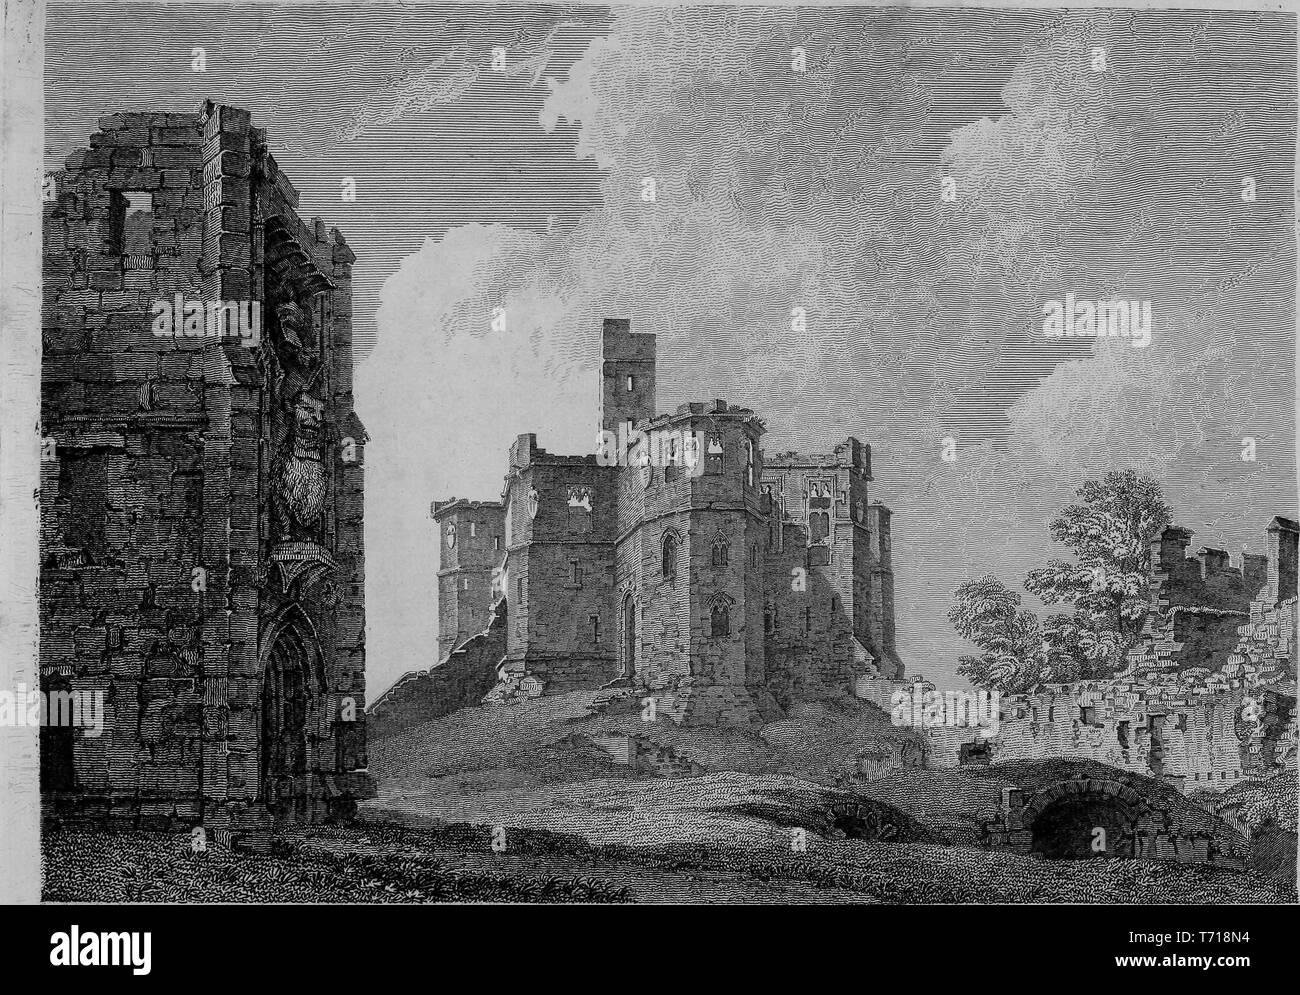 Incisione del castello di Warkworth in Northumberland, Inghilterra, dal libro "Antichità di Gran Bretagna' da William Byrne e Thomas Hearne, 1825. La cortesia Internet Archive. () Foto Stock